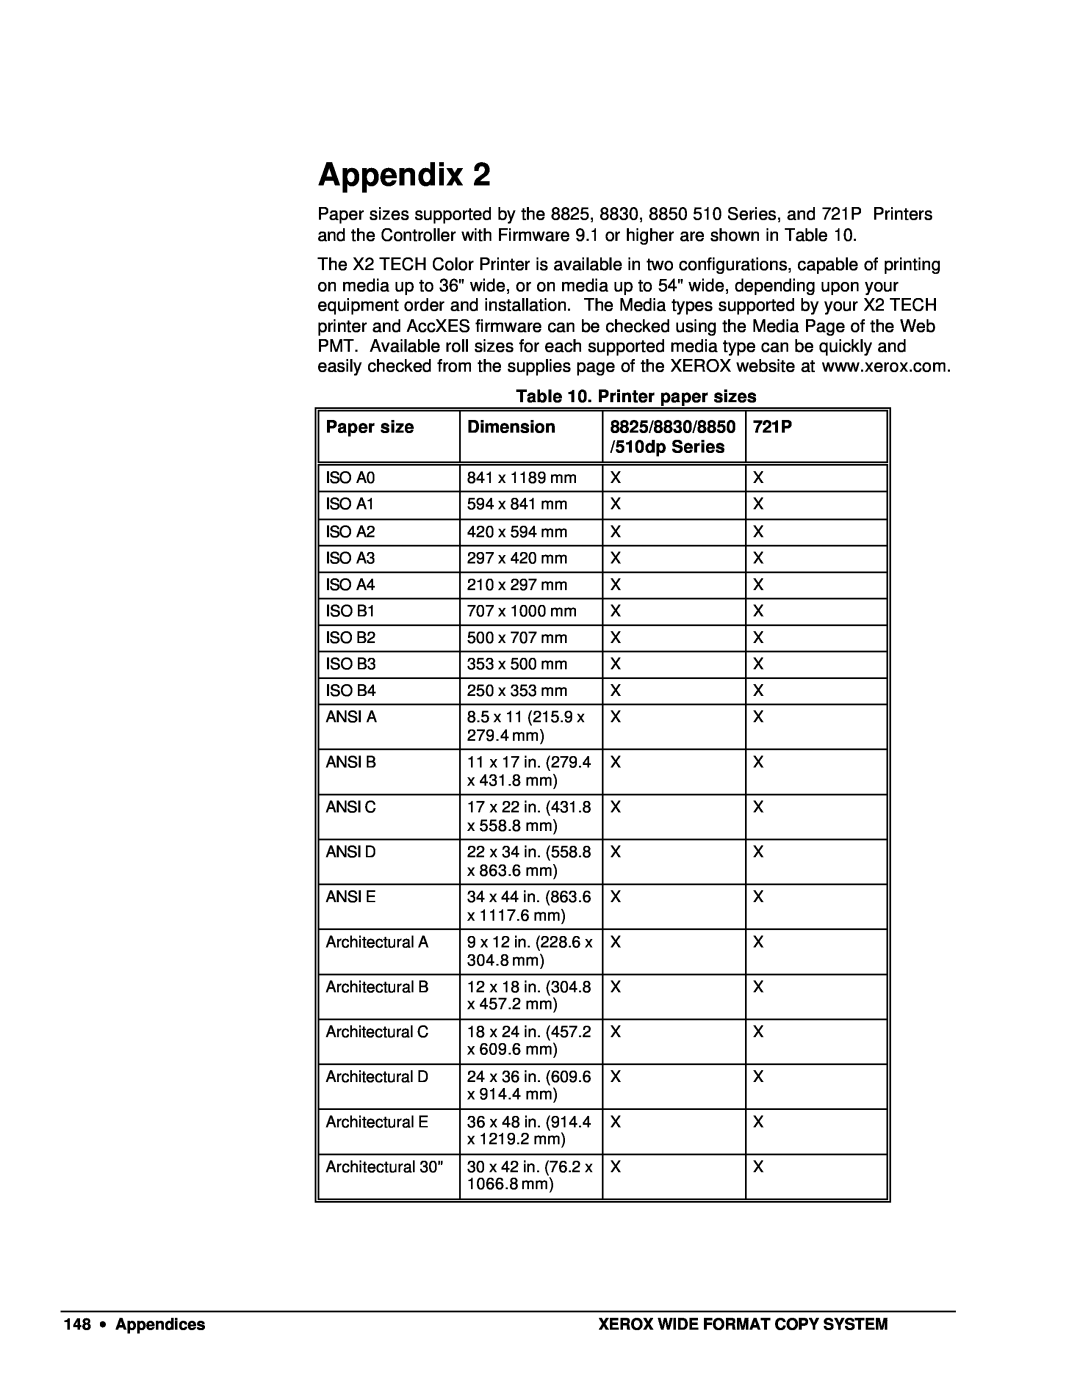 Xerox X2 Appendix, Printer paper sizes, Paper size, Dimension, 8825/8830/8850, 721P, 510dp Series, 148 ∙ Appendices 